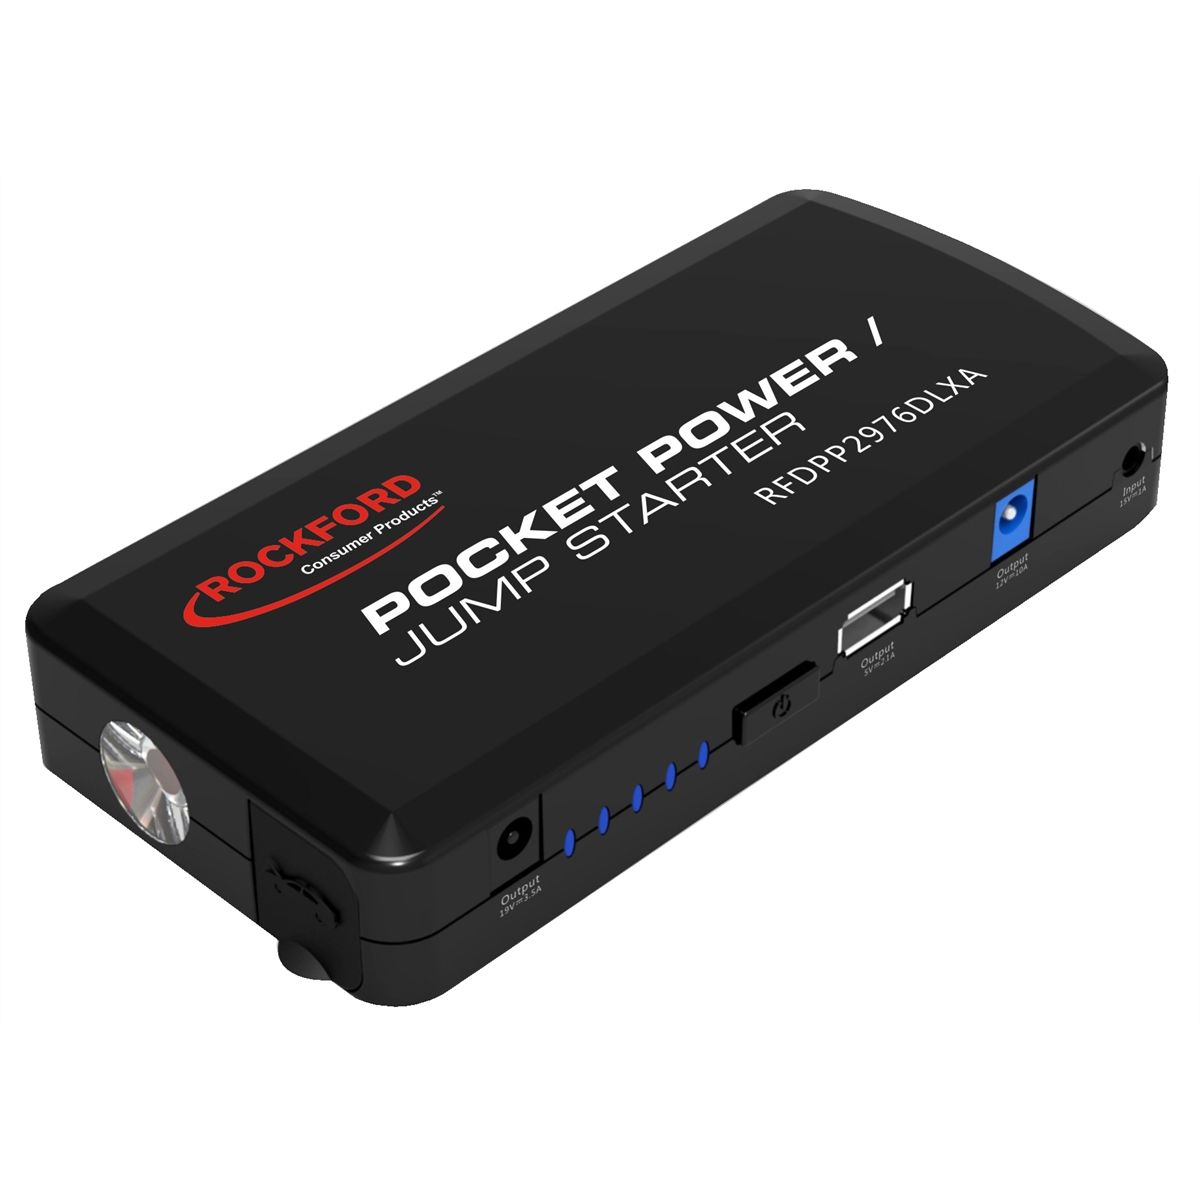 Pocket Power/Jump Starter , 12000mAh,Black color